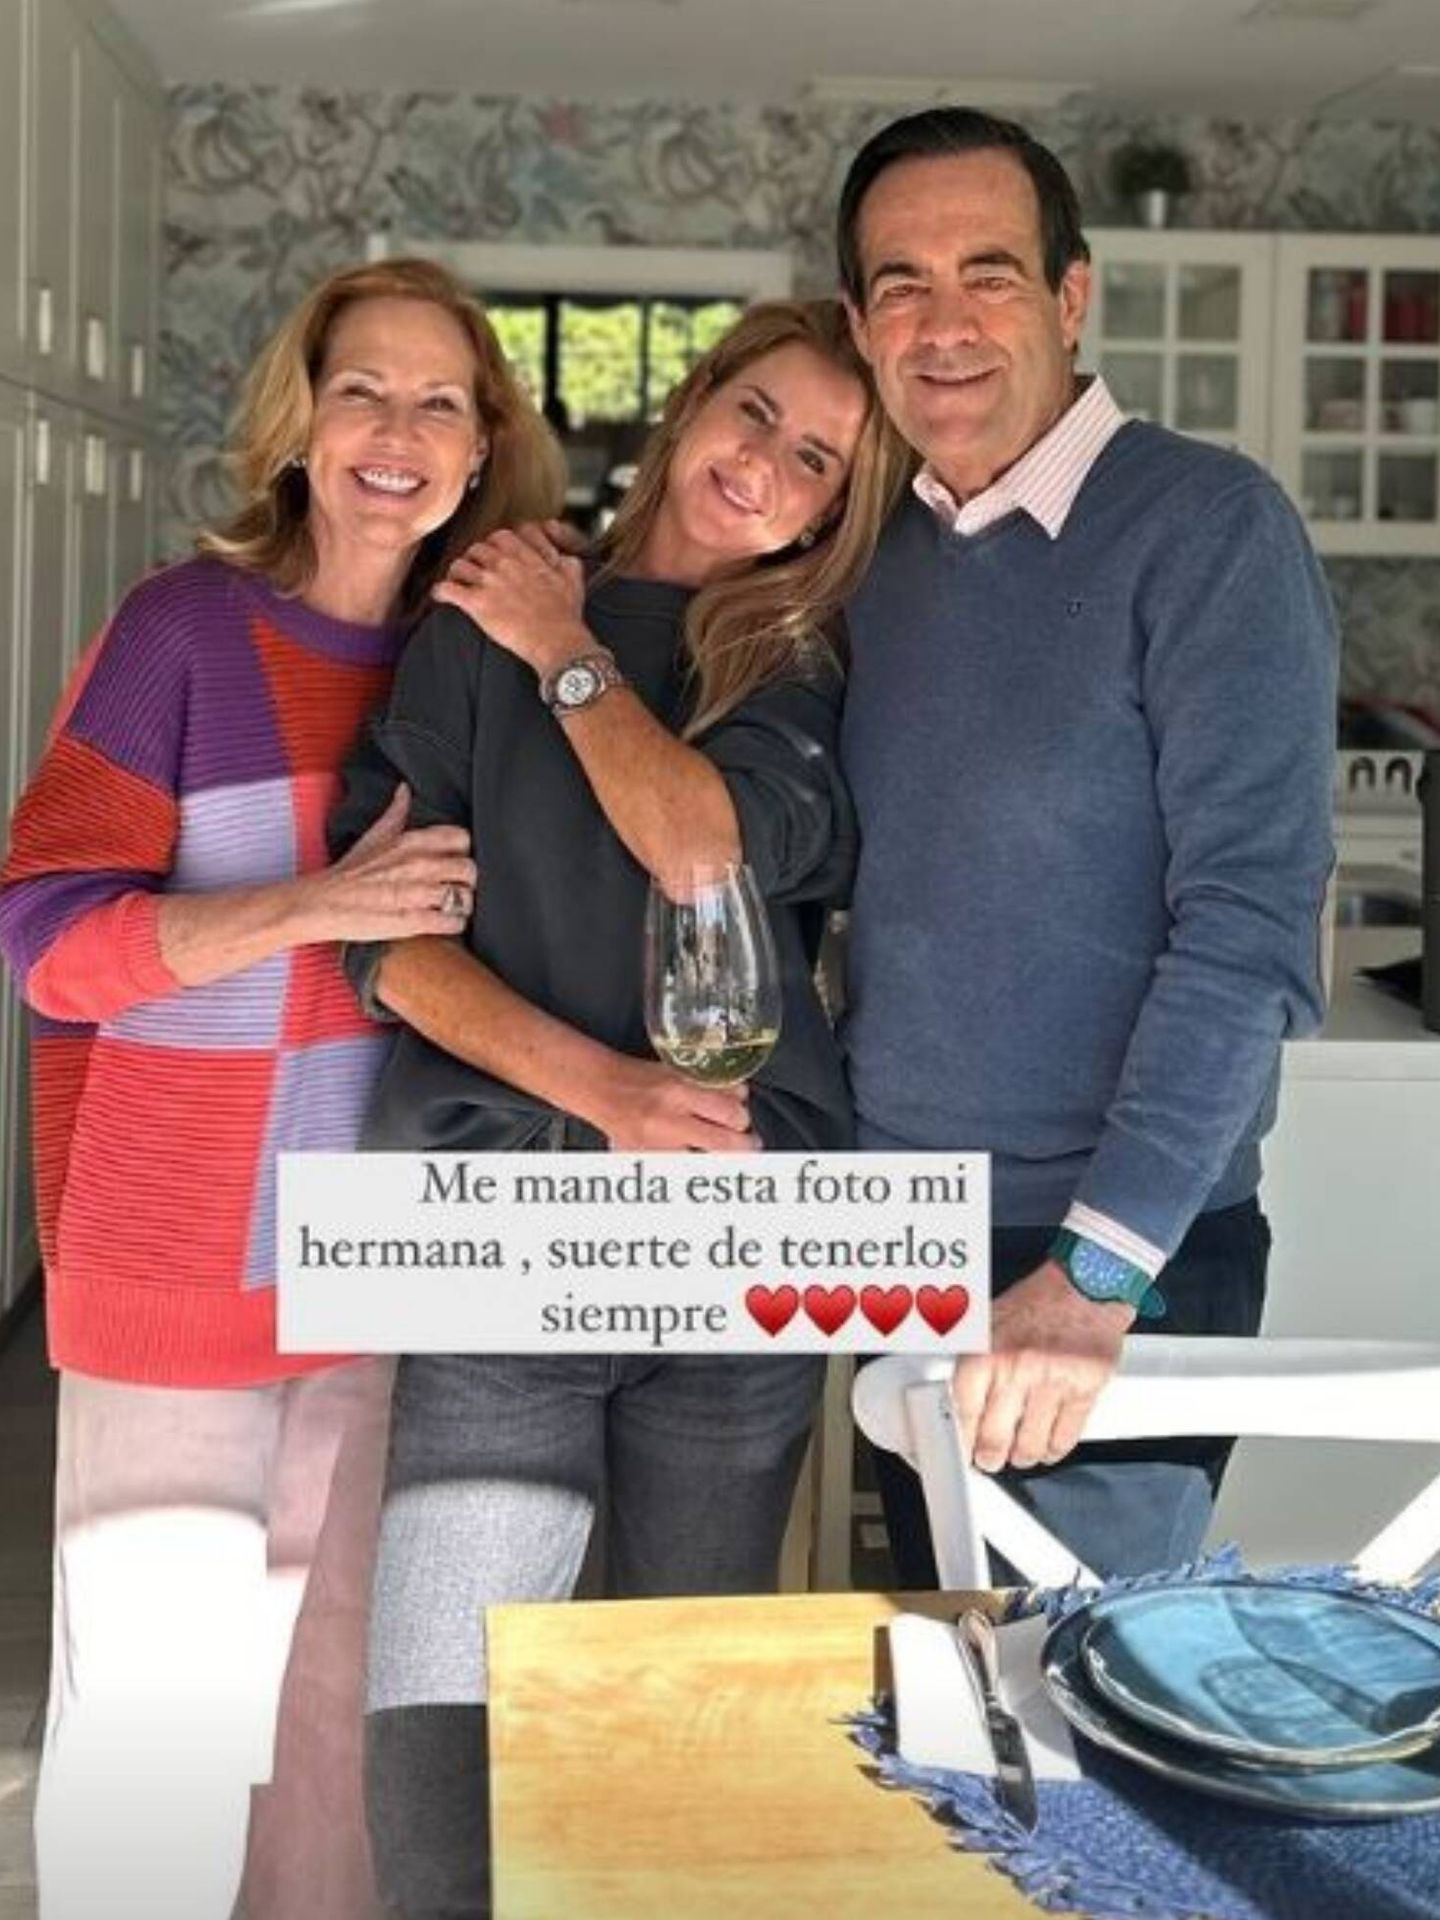 La emotiva fotografía de Amelia Bono junto a sus padres. (Instagram/@ameliabono)